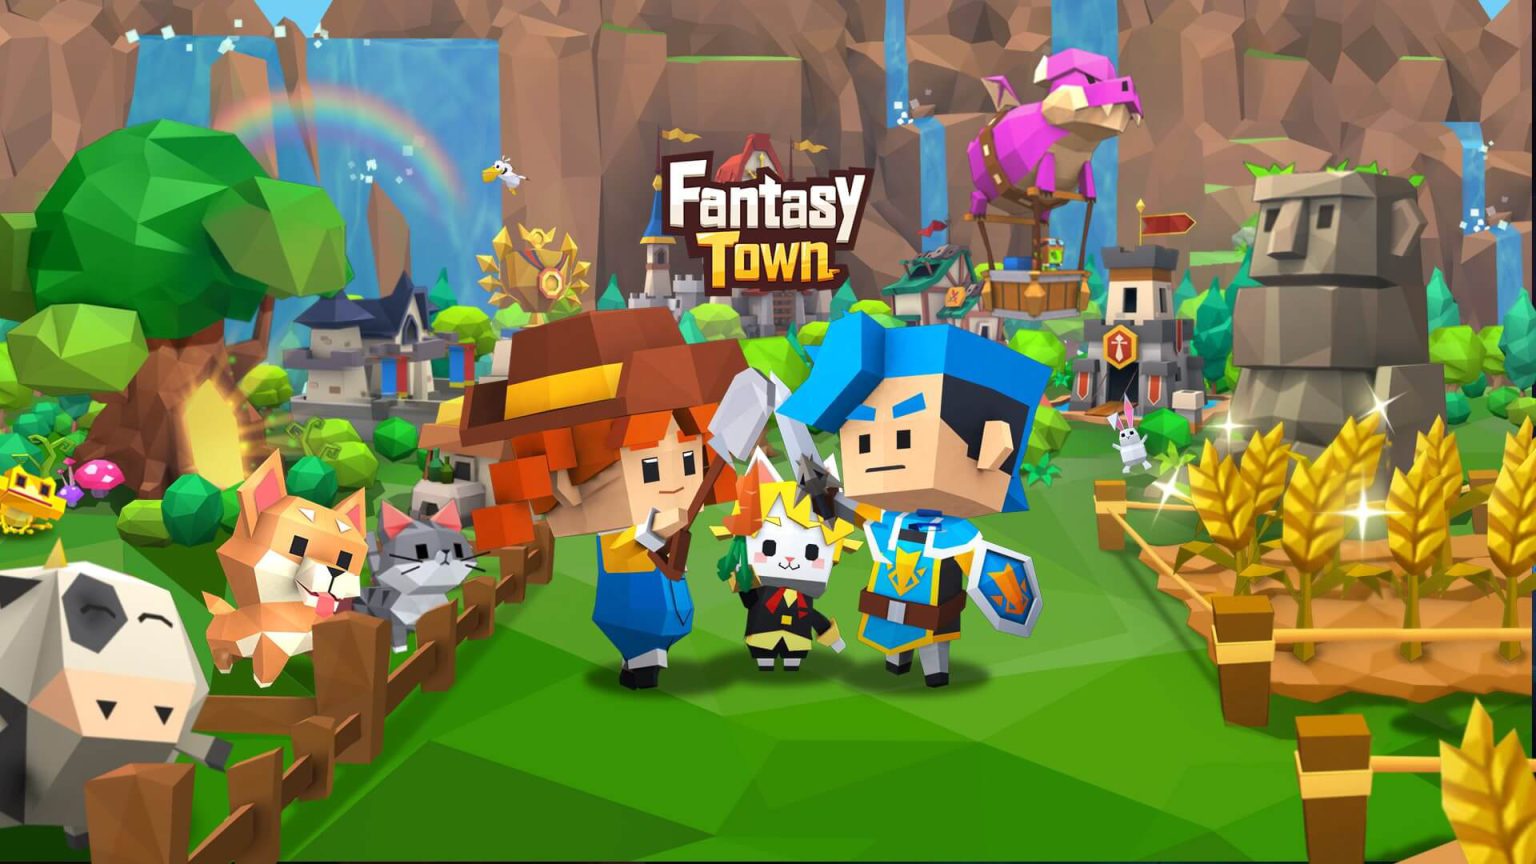 Fantasy Town